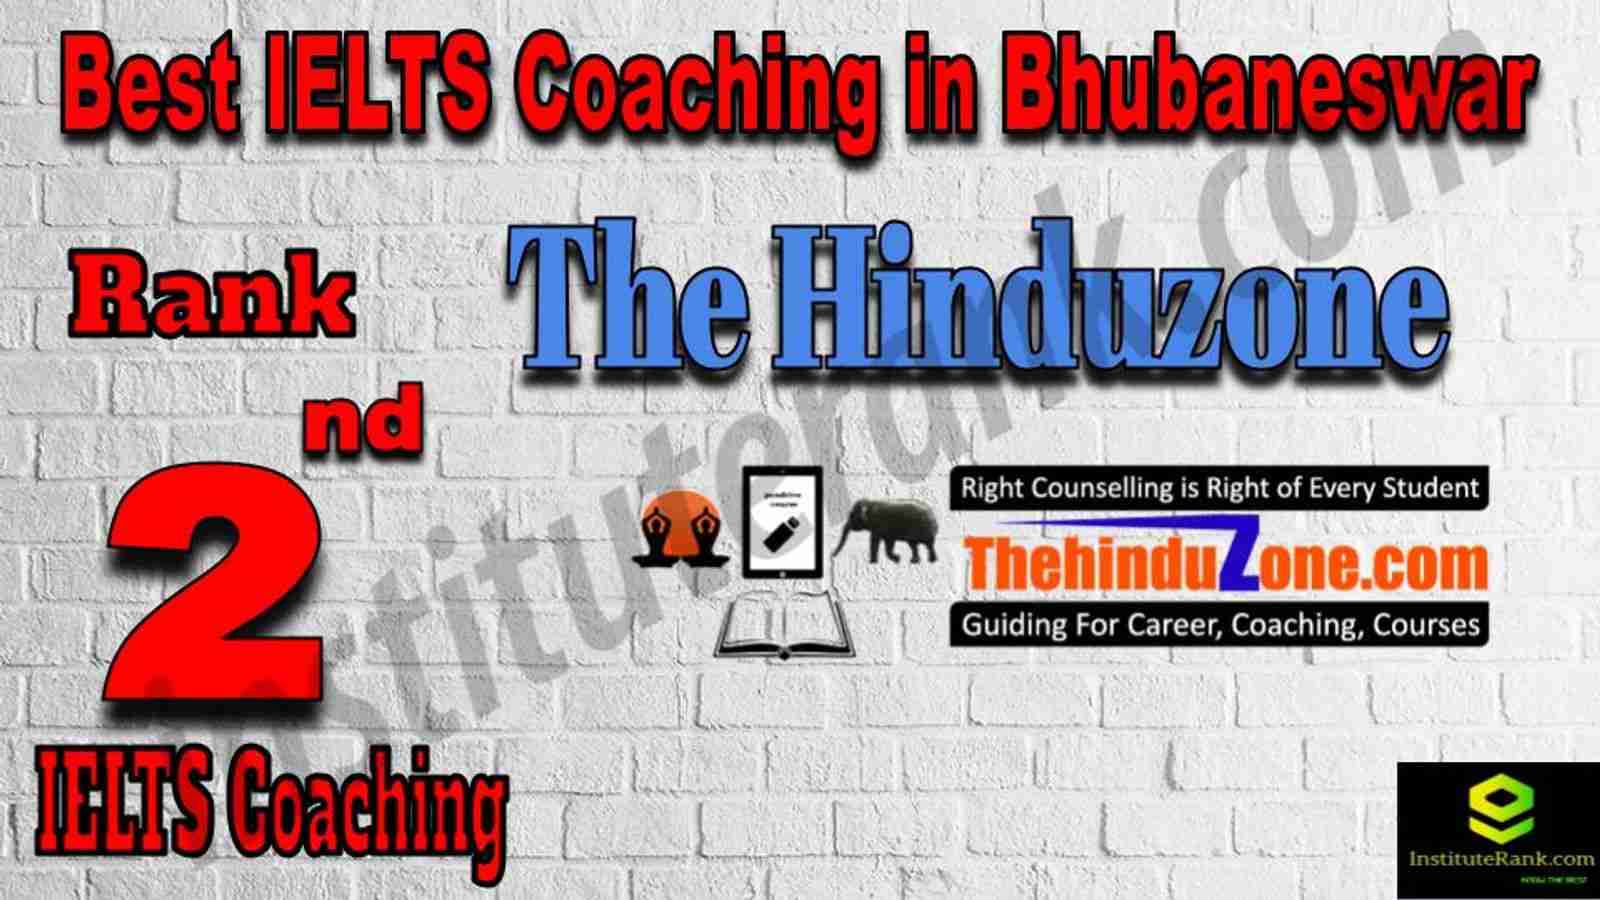 2nd Best IELTS Coaching in Bhubaneswar